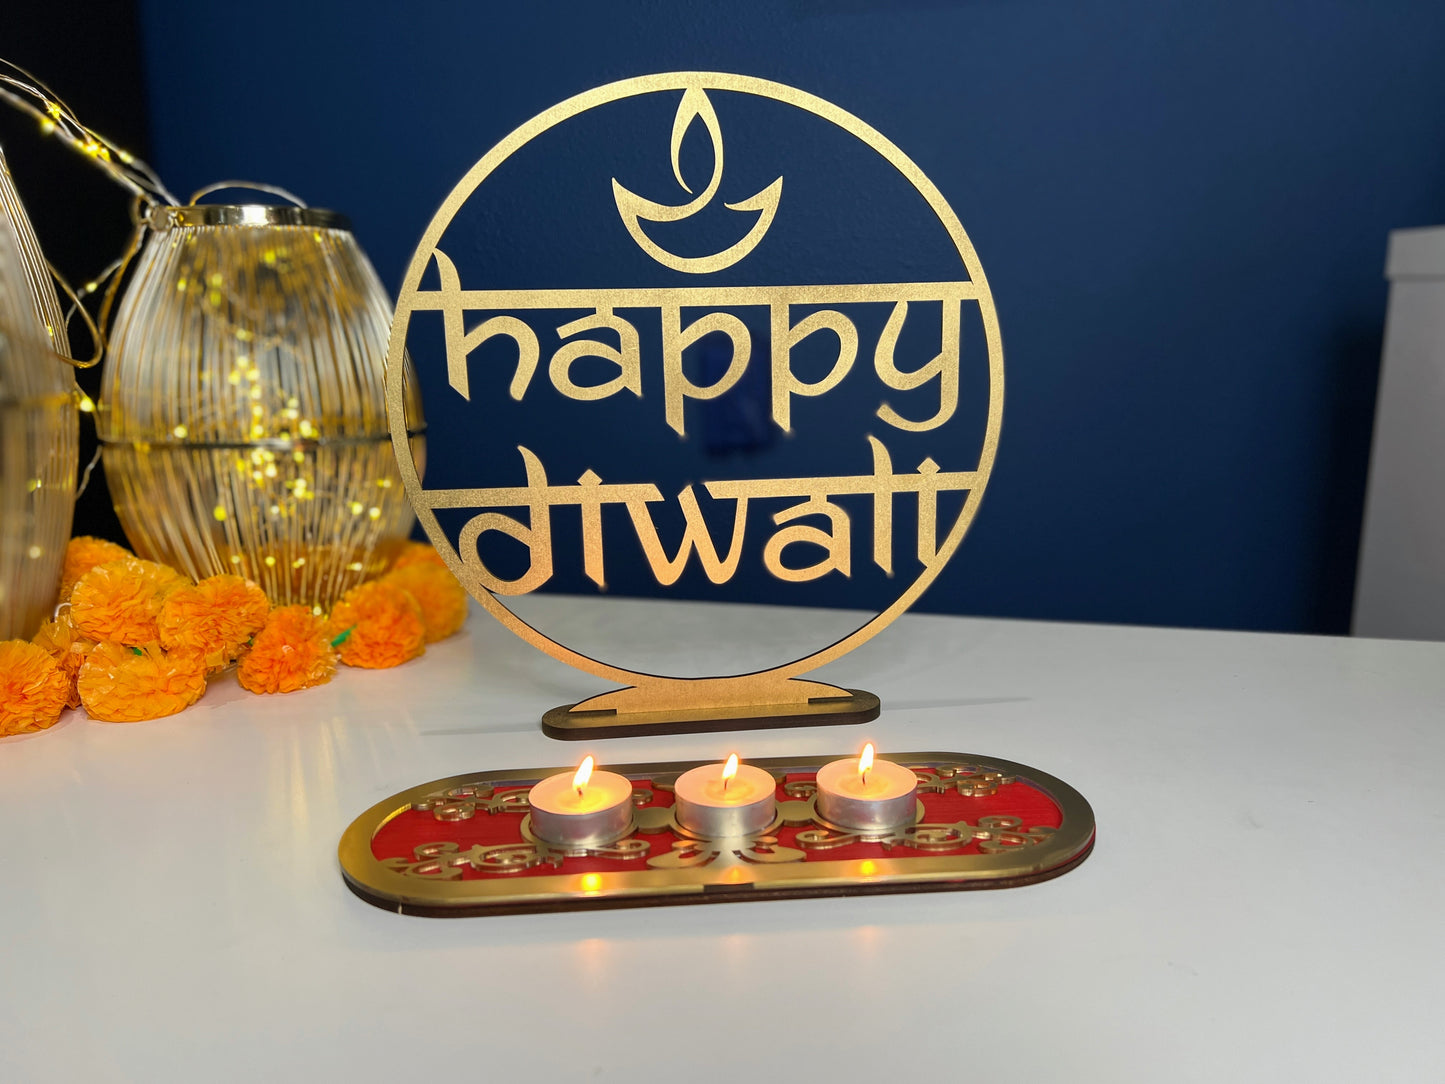 Diwali Decor - Elegant Dipawali Sign and Tea-light holder.